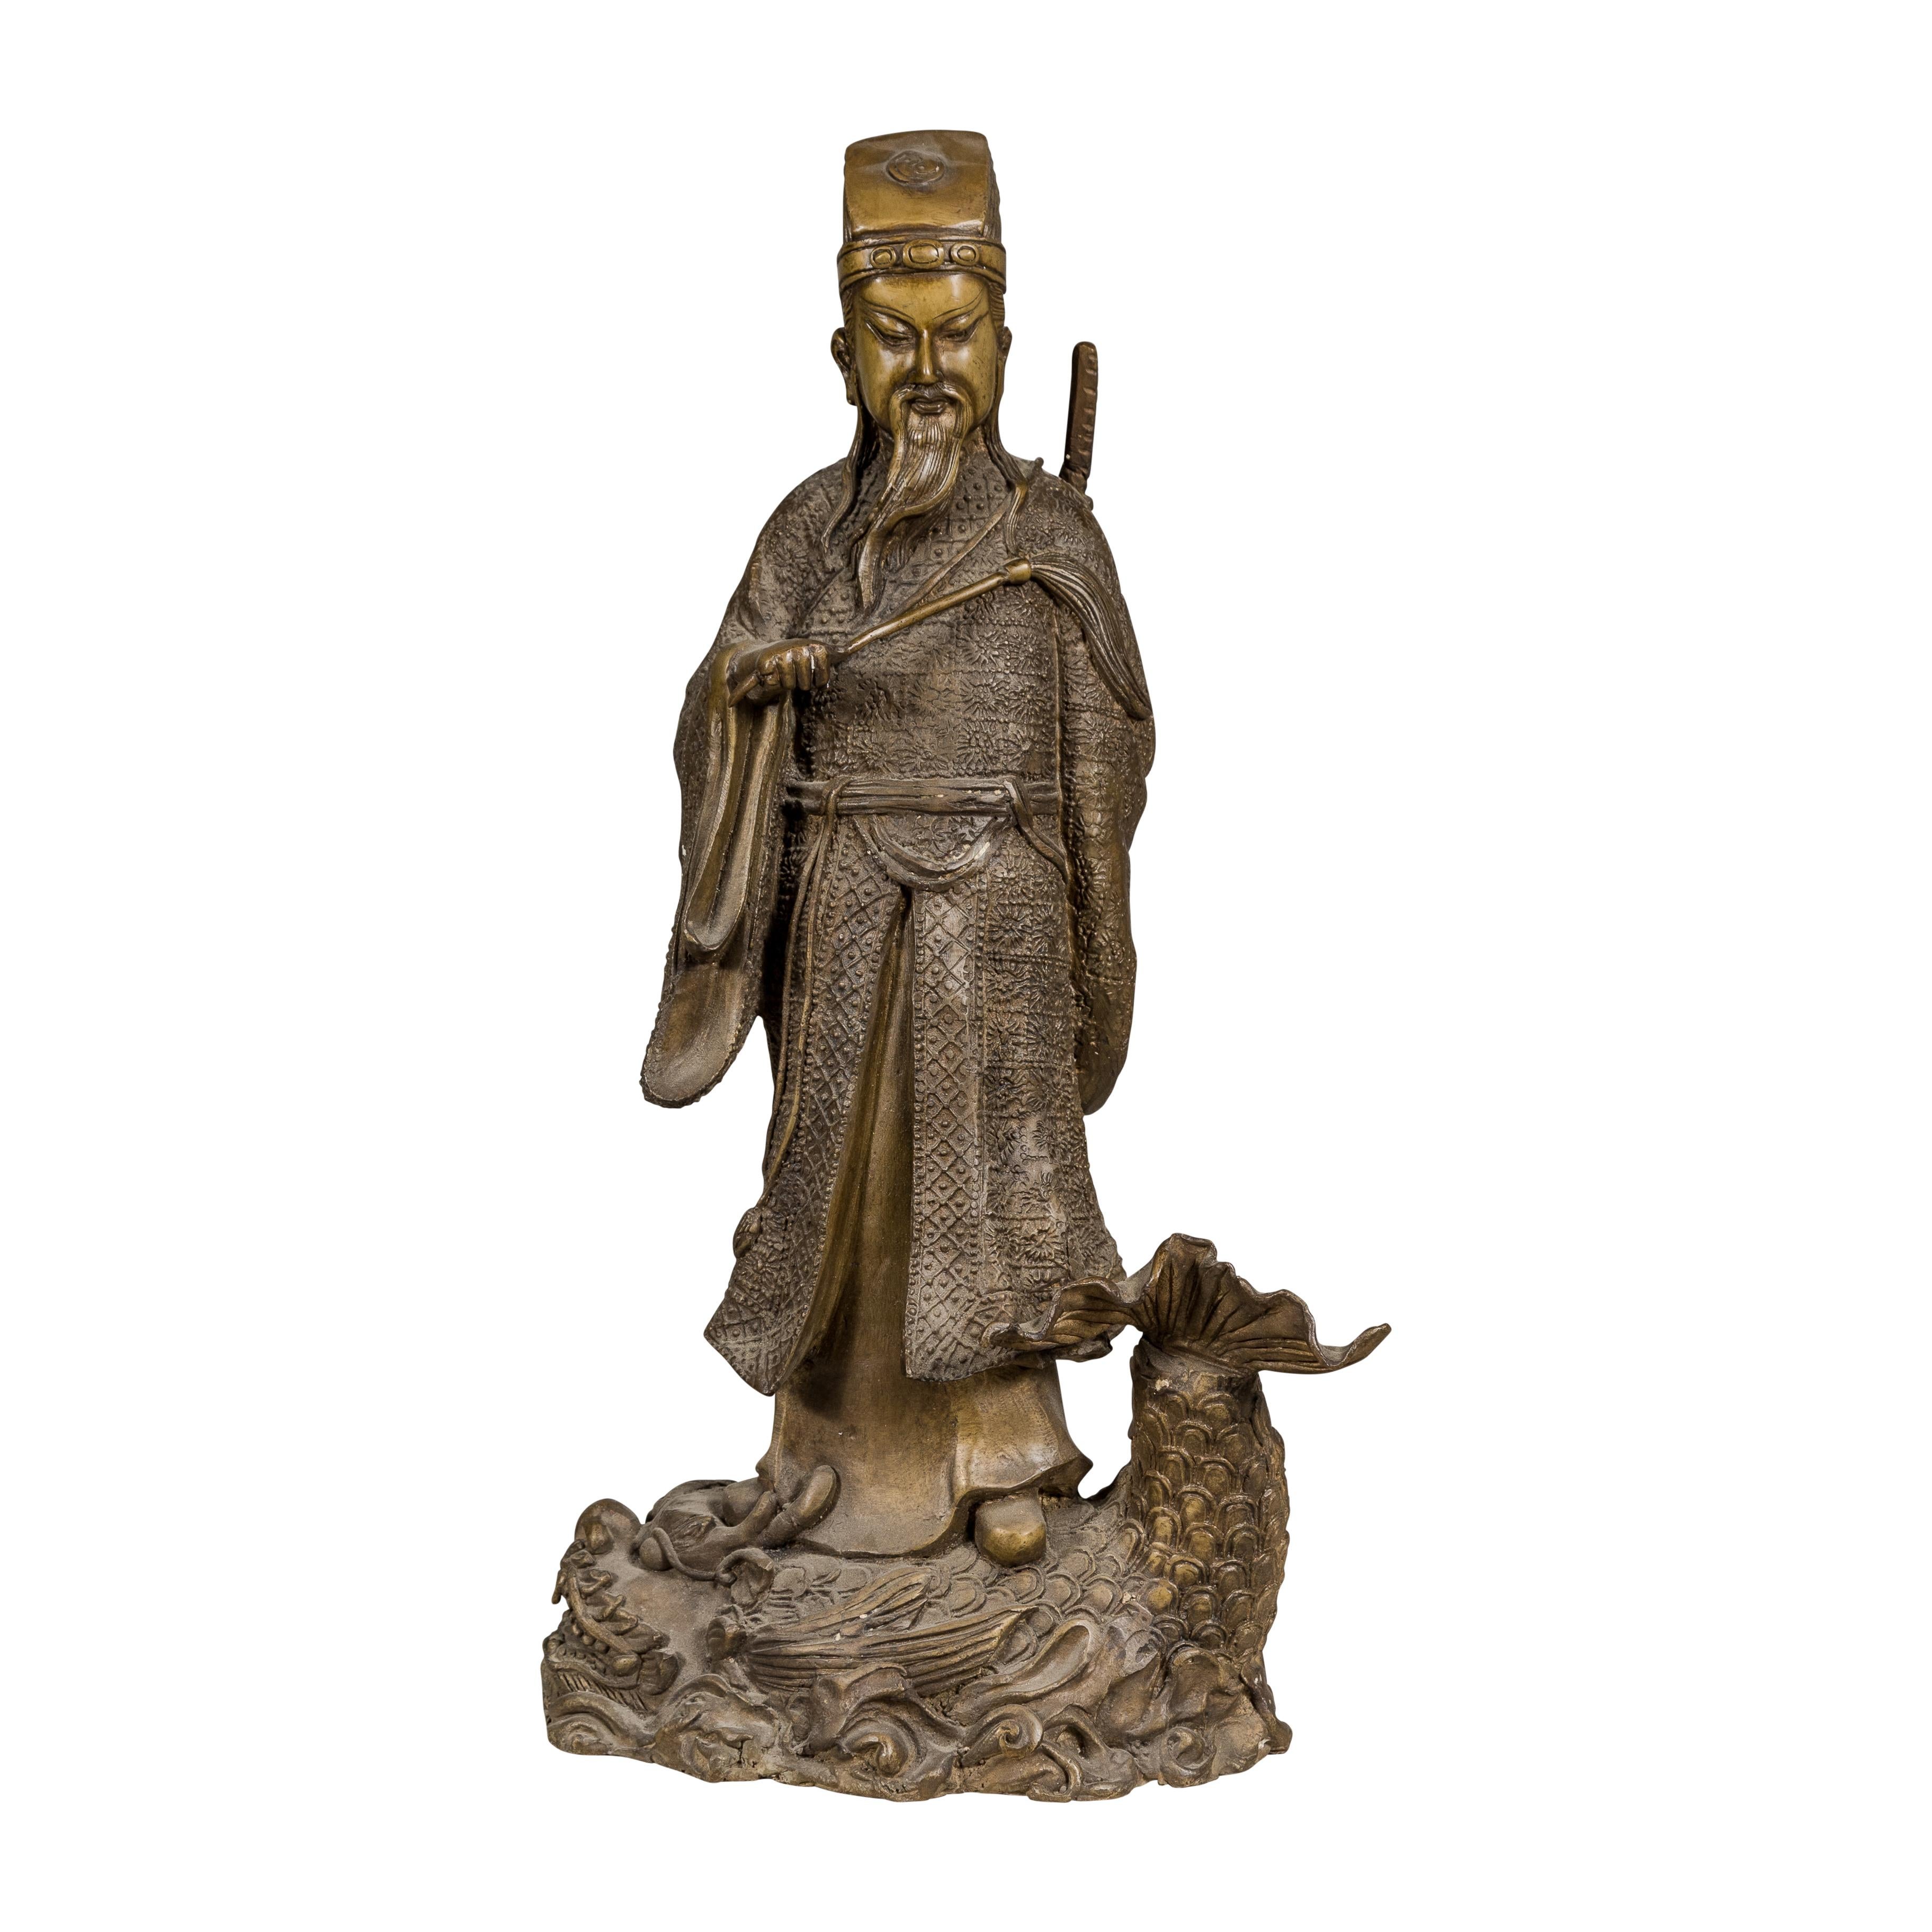 Statuette vintage en bronze représentant une figure ancestrale chinoise debout sur un poisson géant. Découvrez une magnifique fusion d'art et d'héritage avec cette statuette vintage en bronze, représentant de manière complexe une figure ancestrale